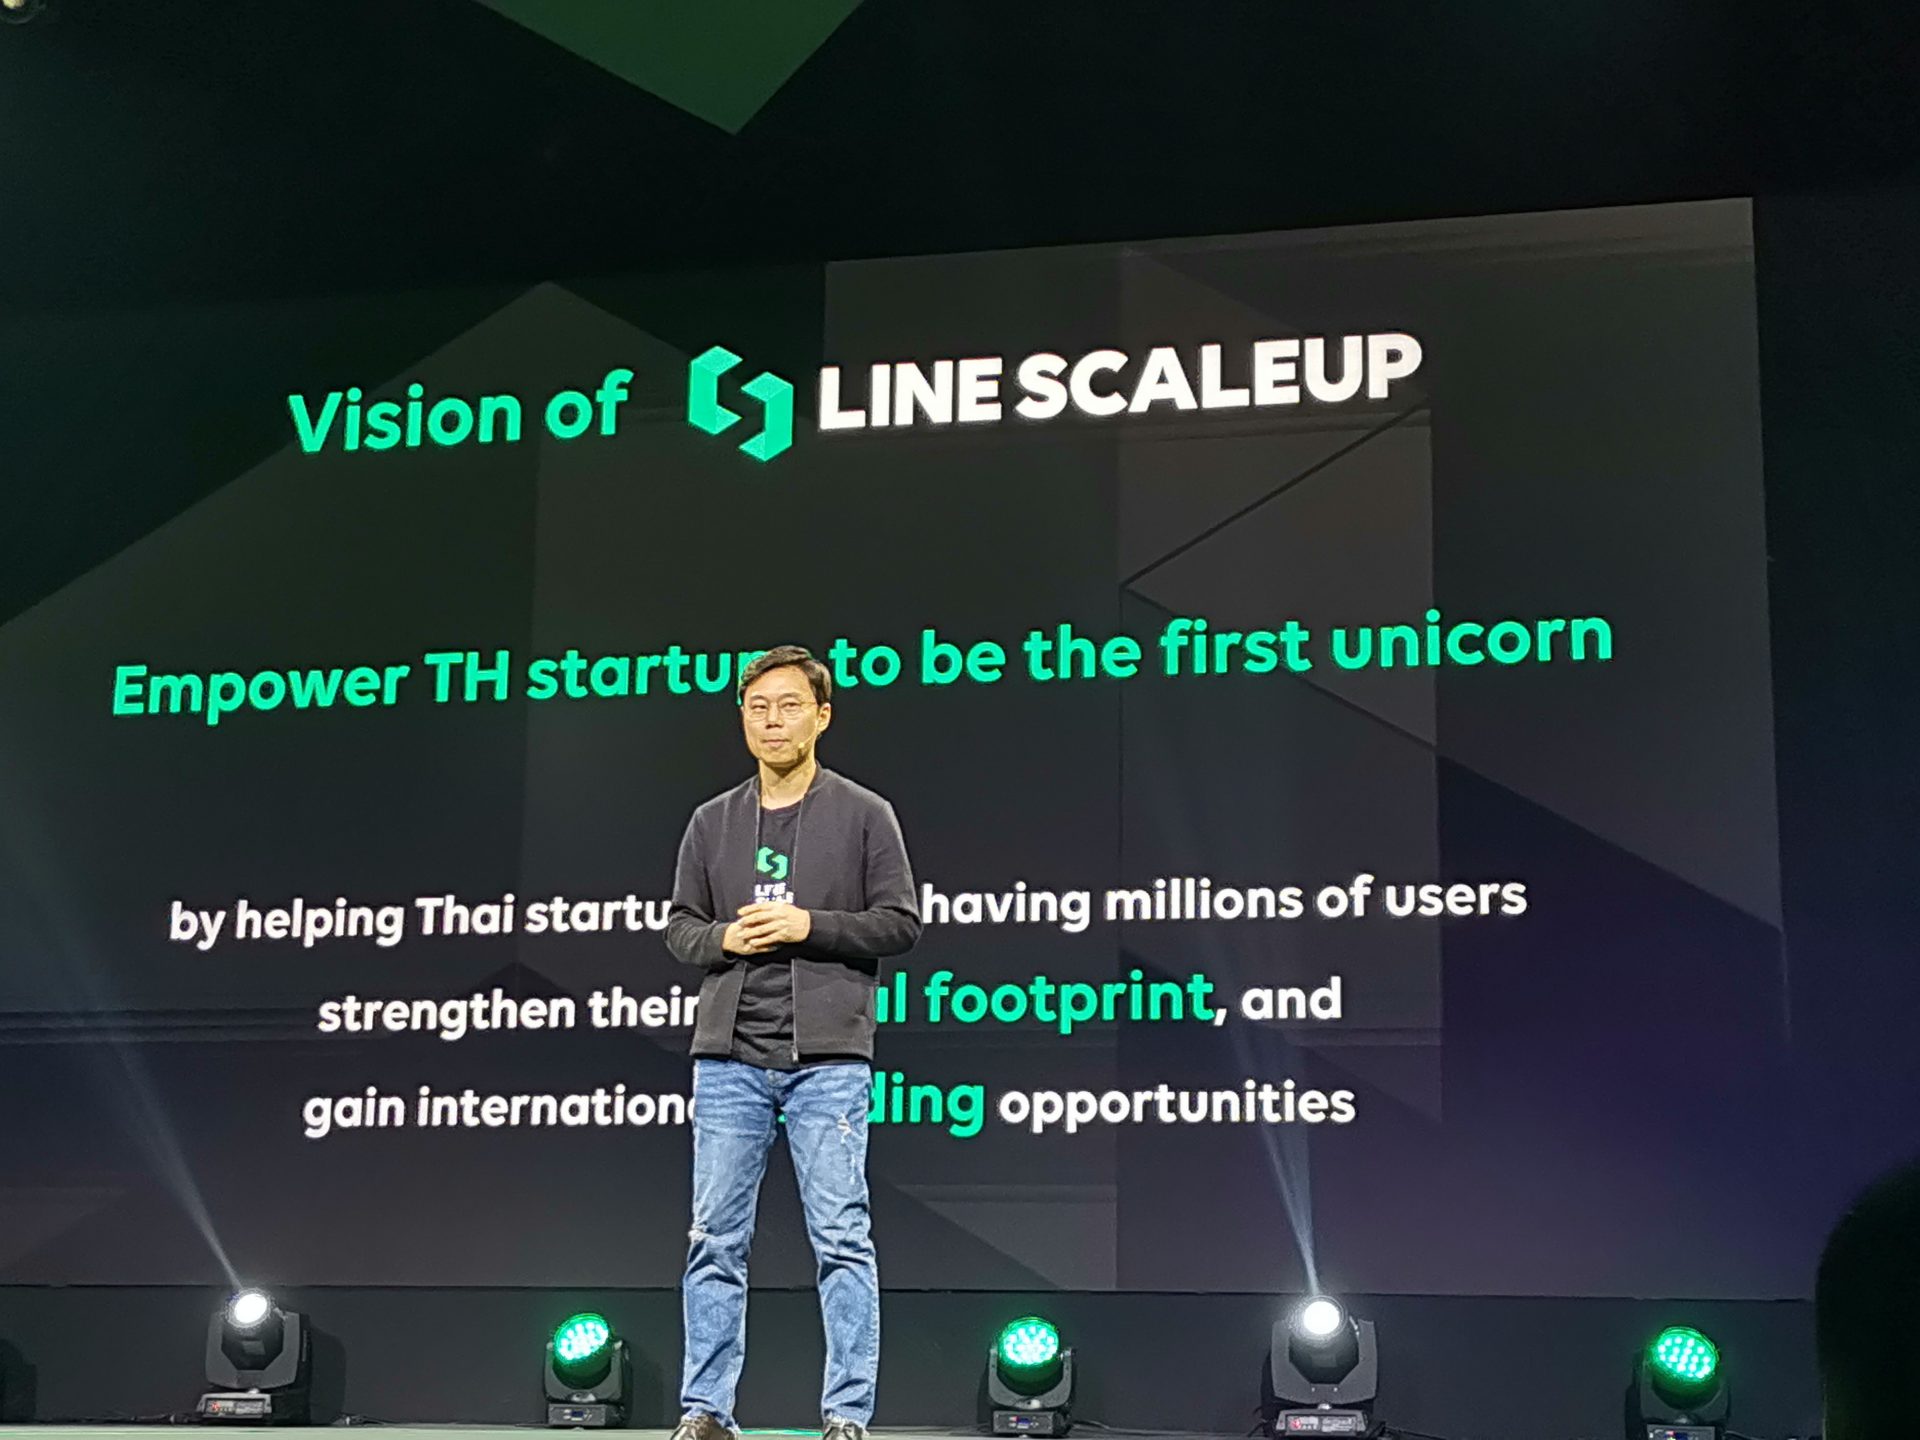 LINE ScaleUp 2019 พร้อมผลักดัน สตาร์ทอัปสัญชาติไทย ด้วยงบลงทุนมากกว่า 20 ล้านเหรียญสหรัฐฯ